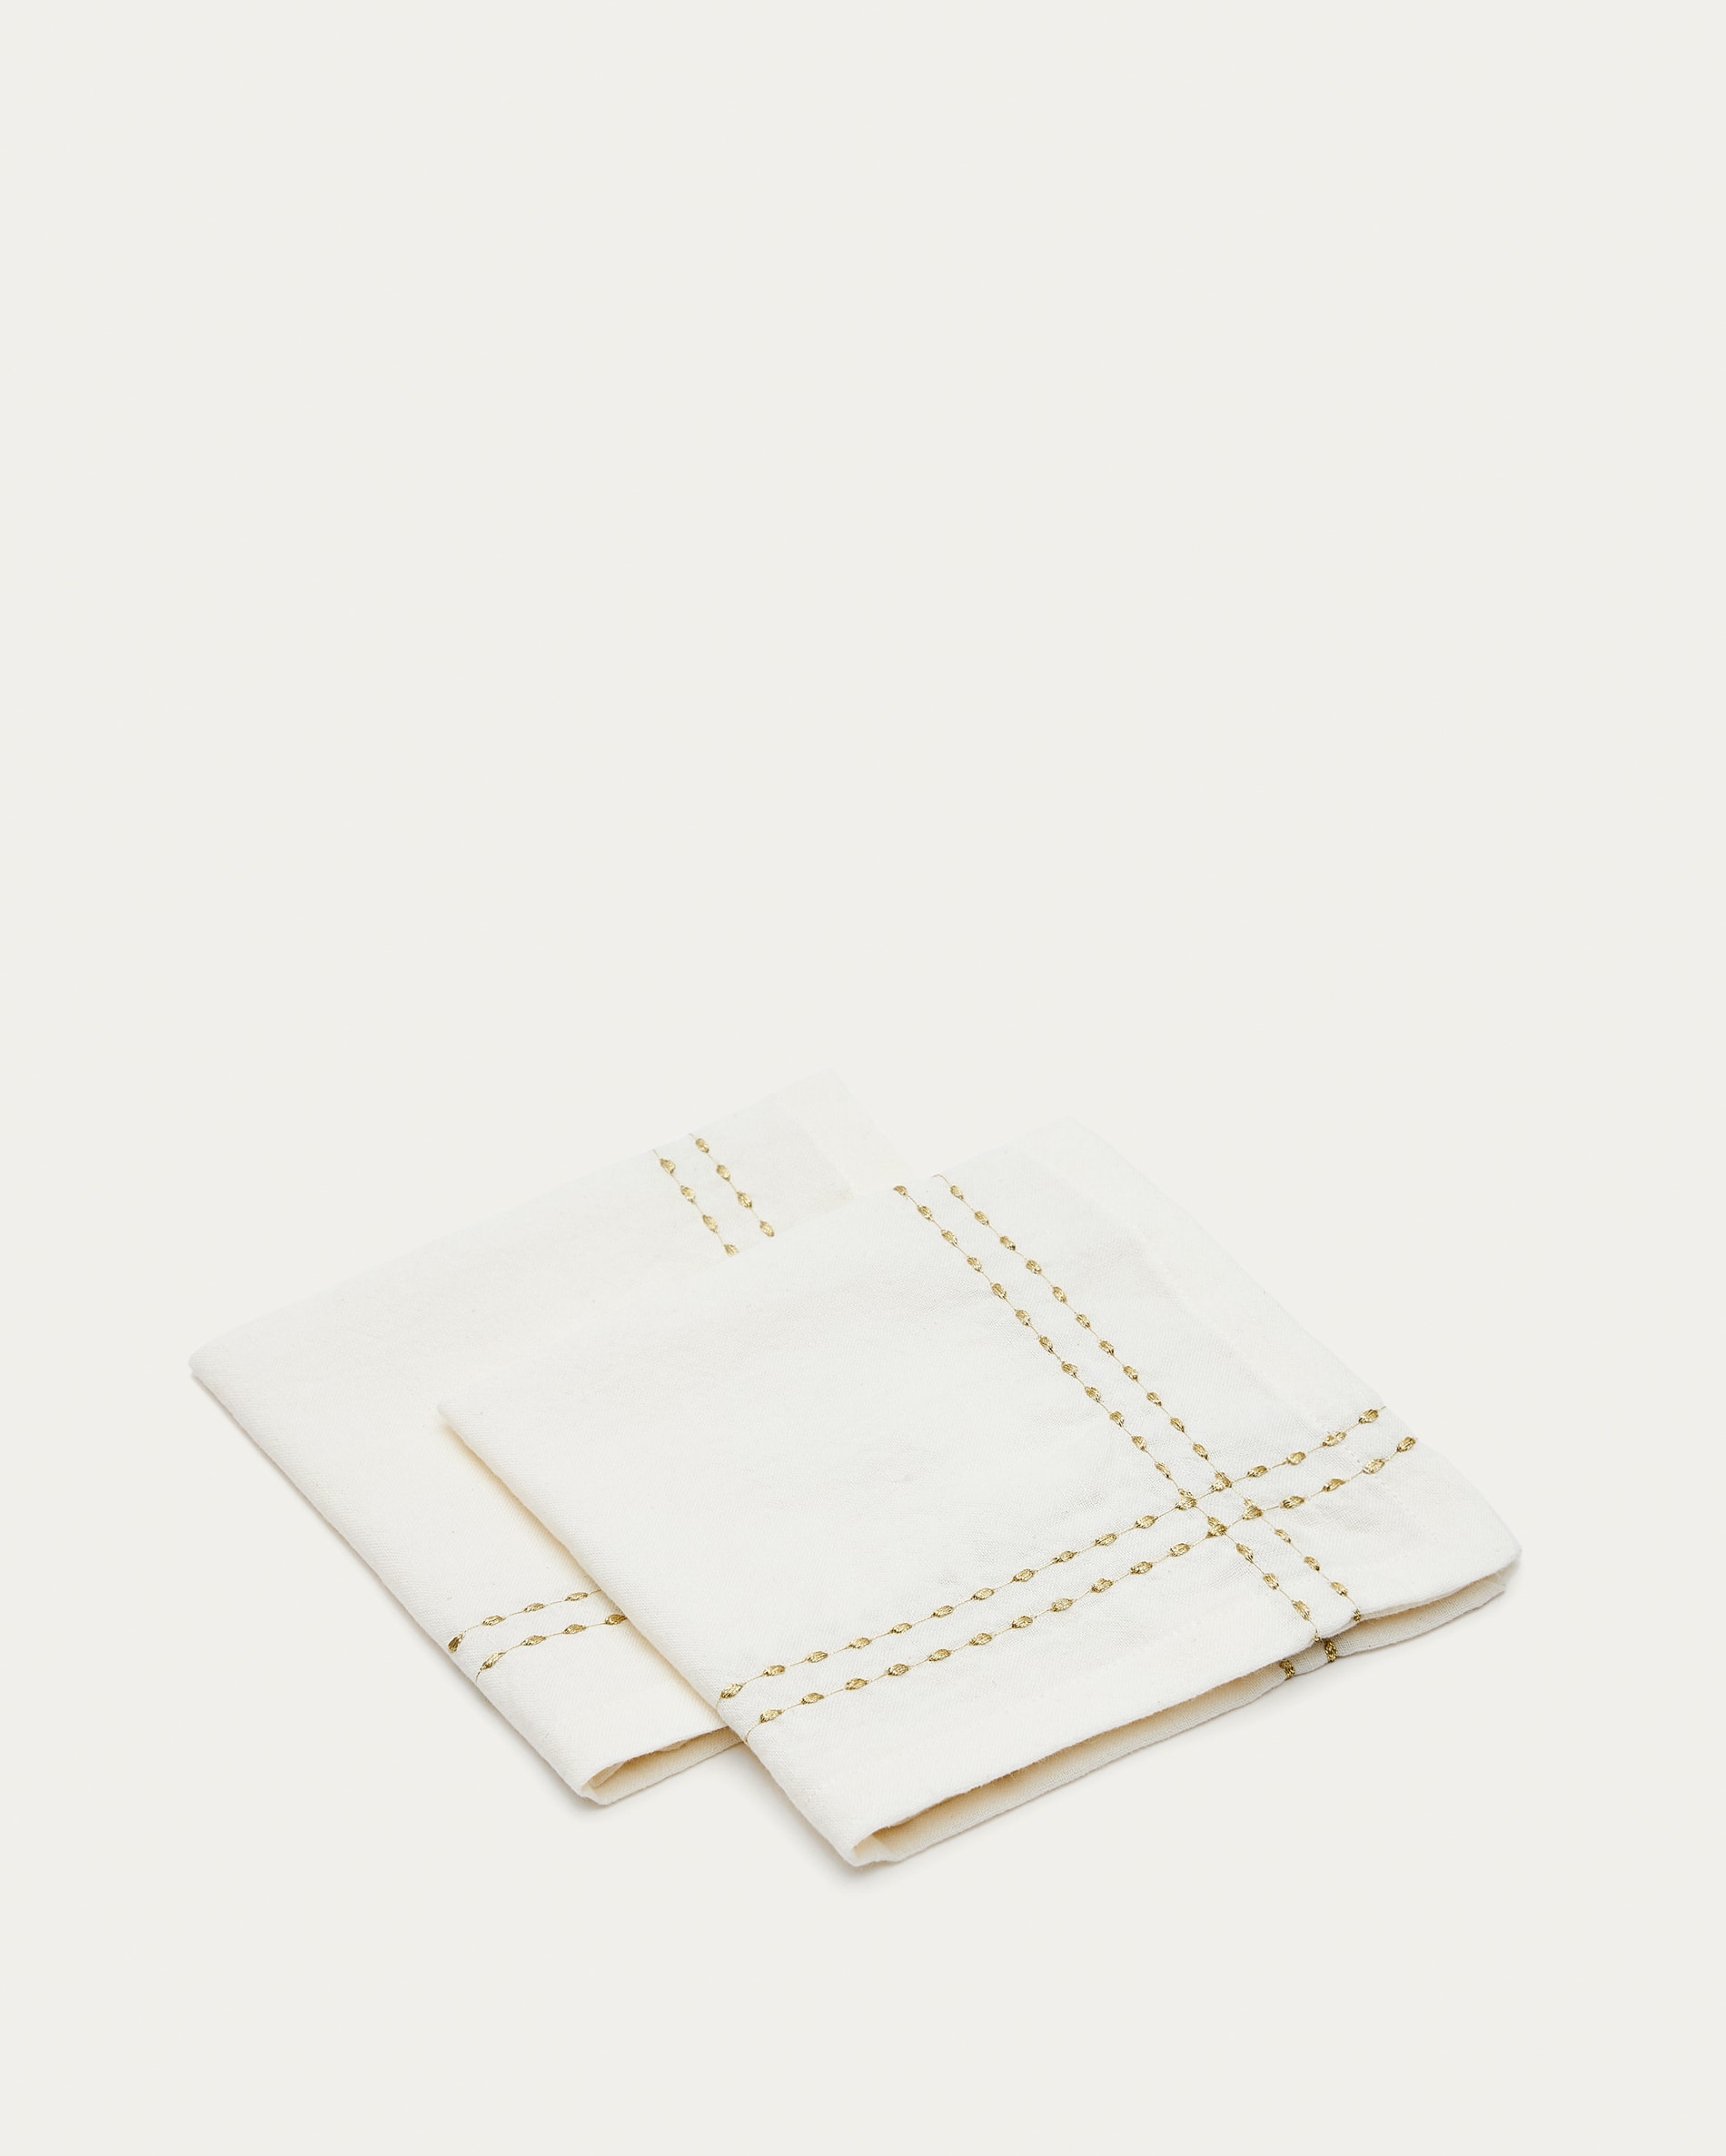 Marek Set mit 2 Servietten aus Baumwolle und weißem Leinen mit  Goldstickerei in Doppelnähten | Kave Home®